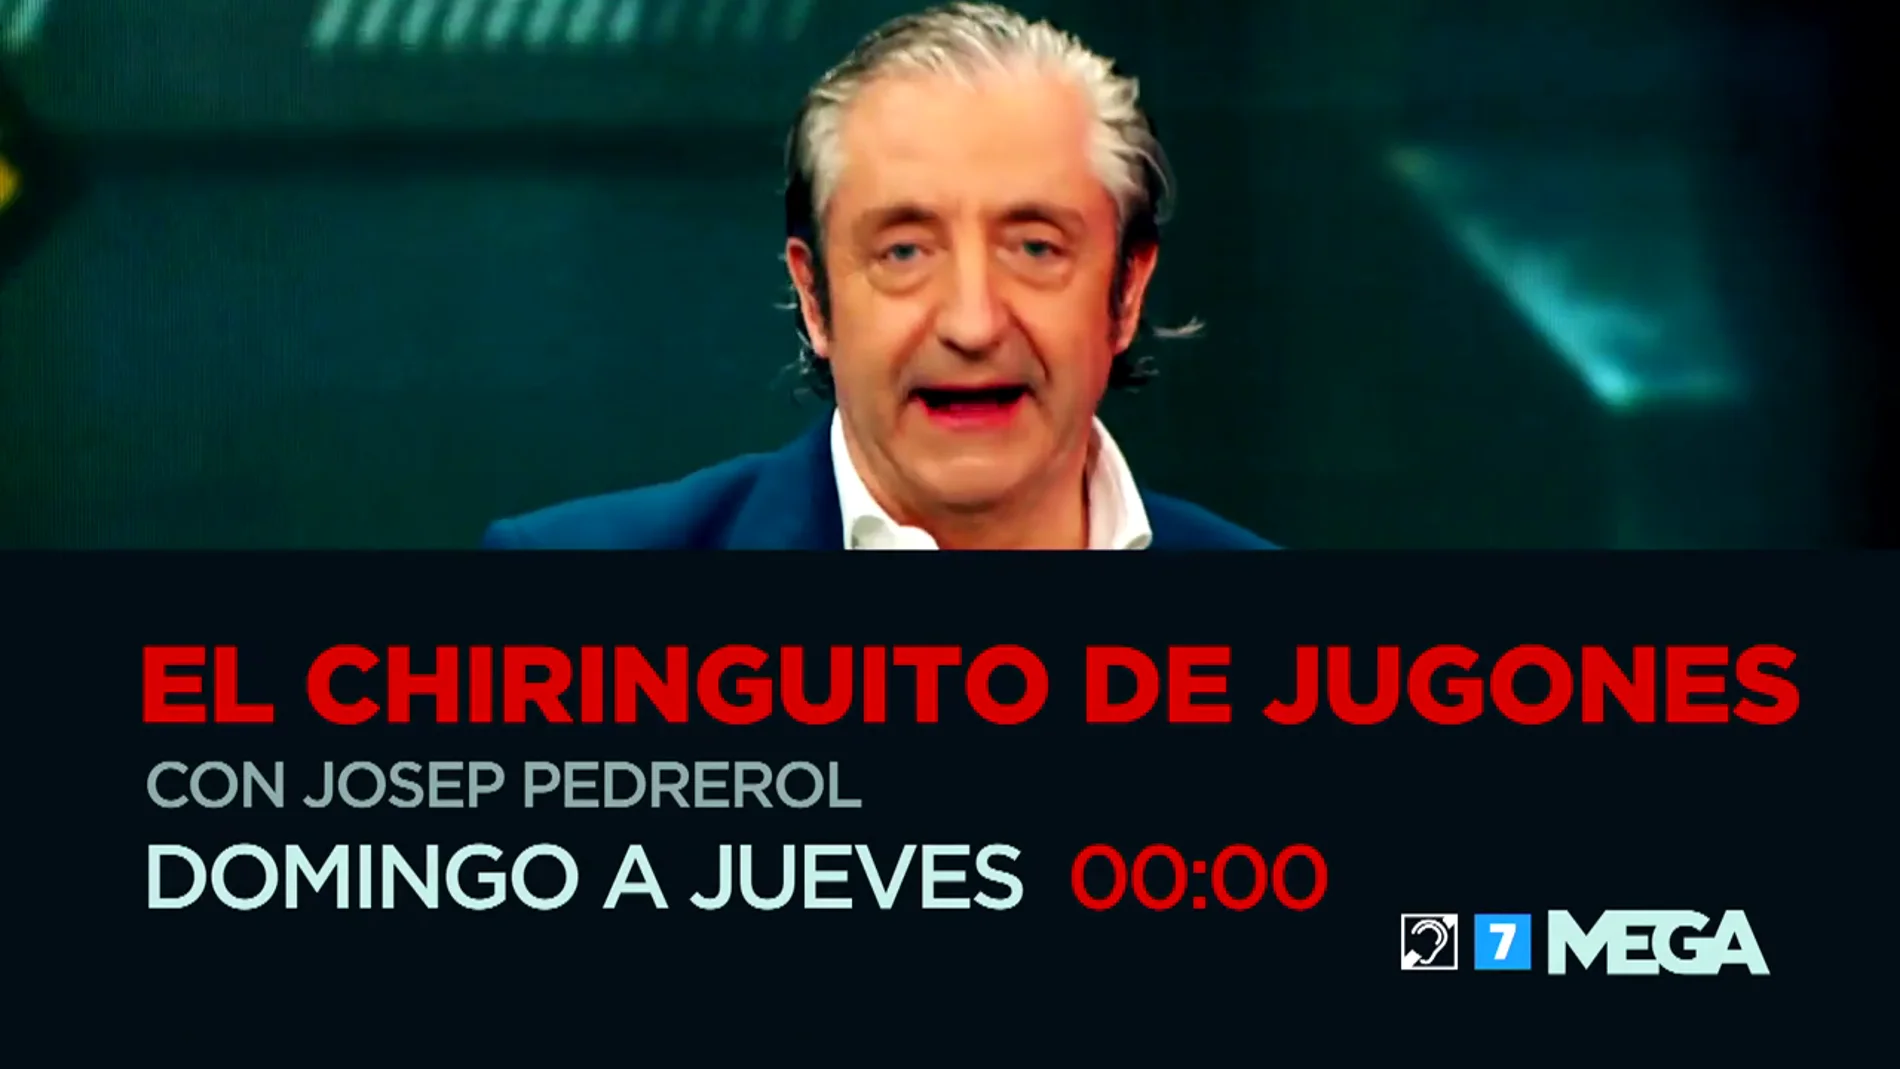 El domingo 14 vuelve Josep Pedrerol a 'El chiringuito' y lo hace con muchas novedades